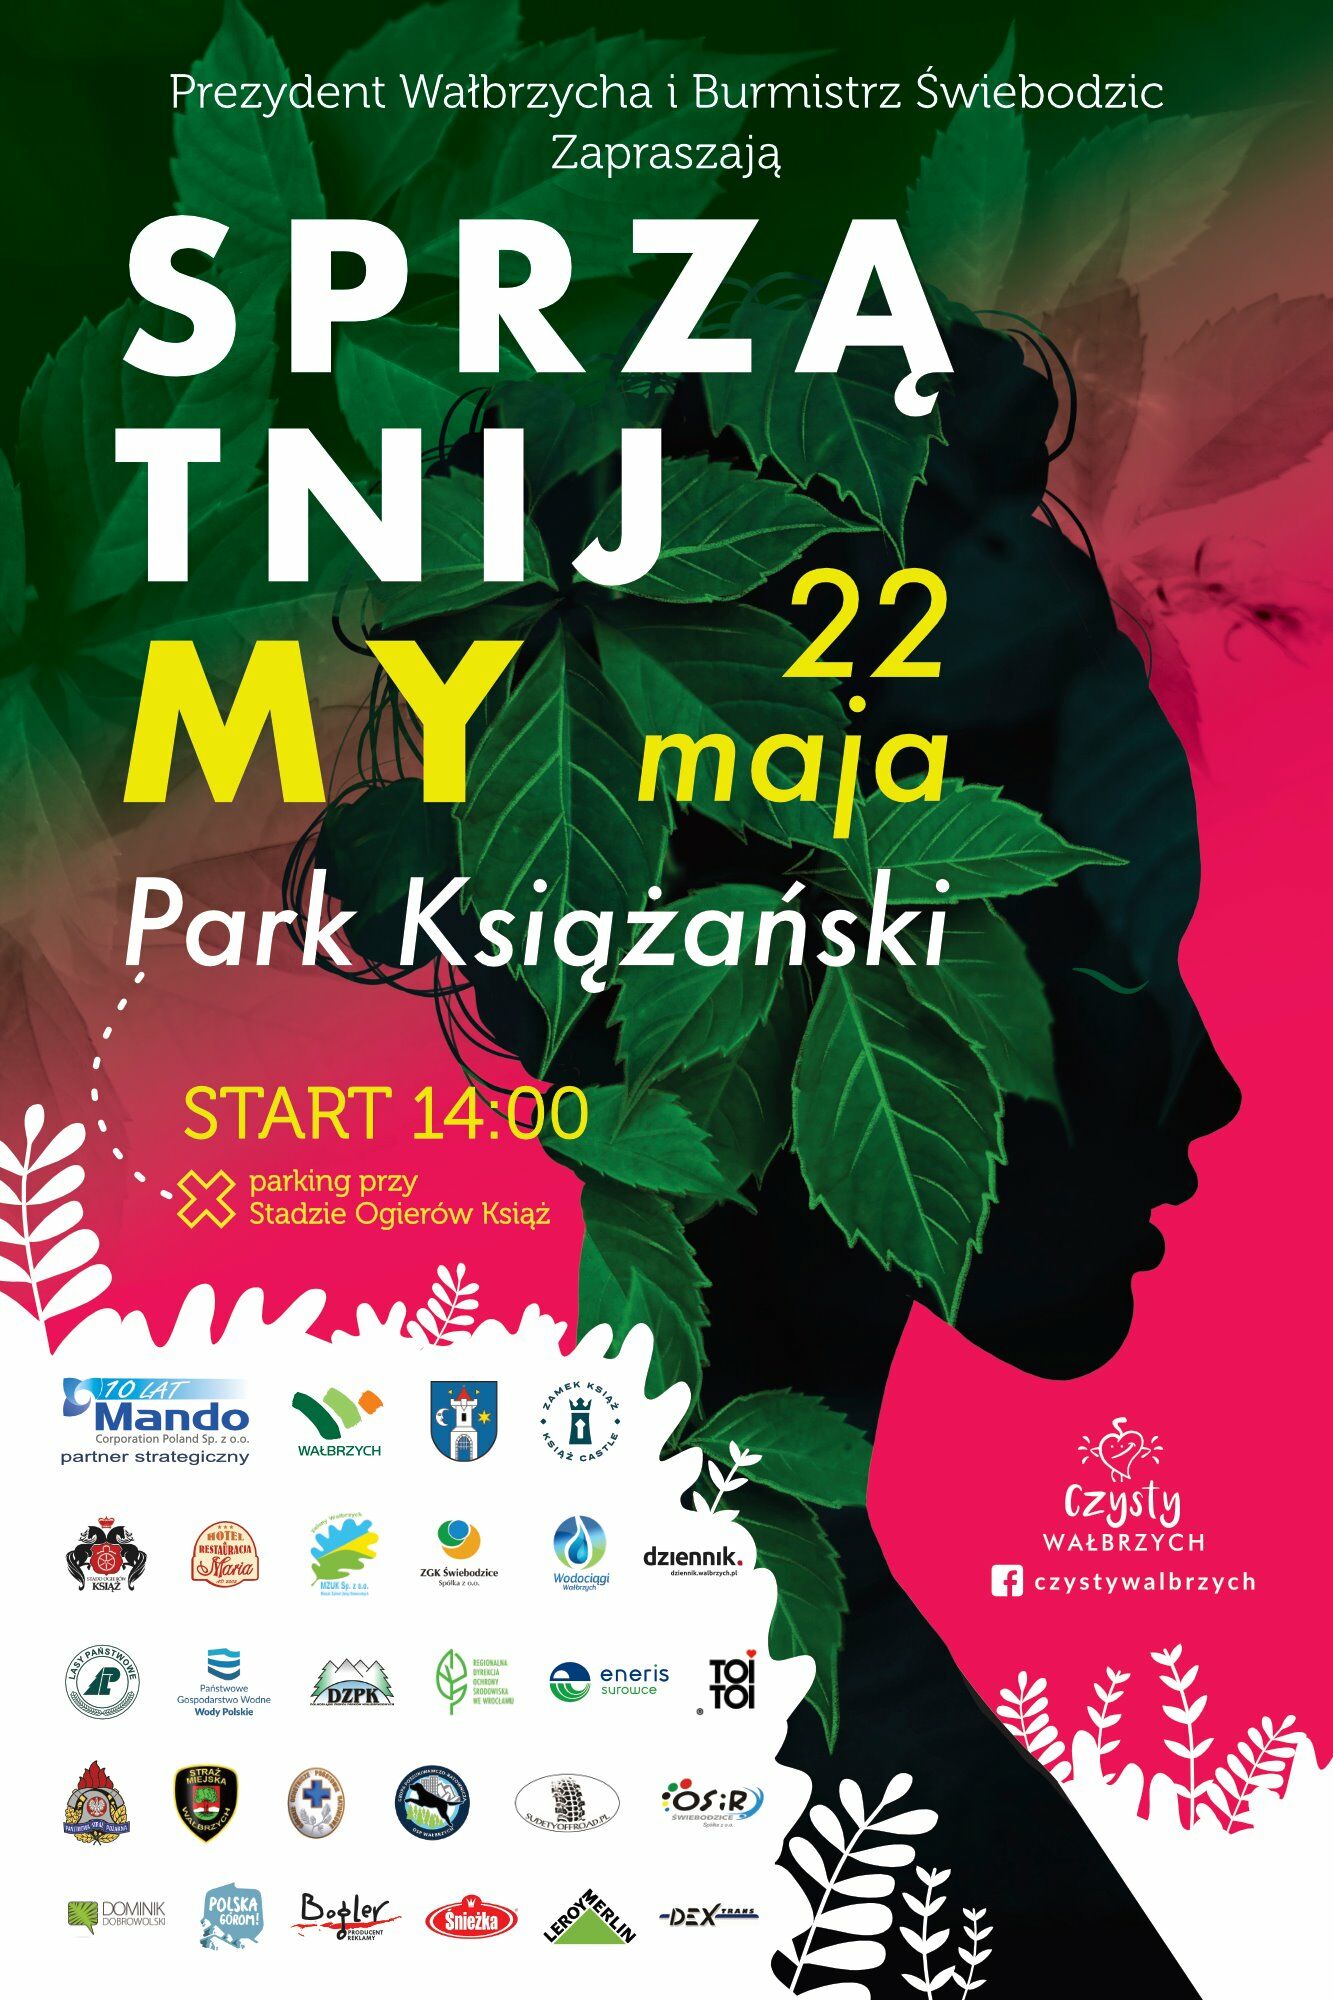 plakat akcji Sprzatnijmy Park Książański